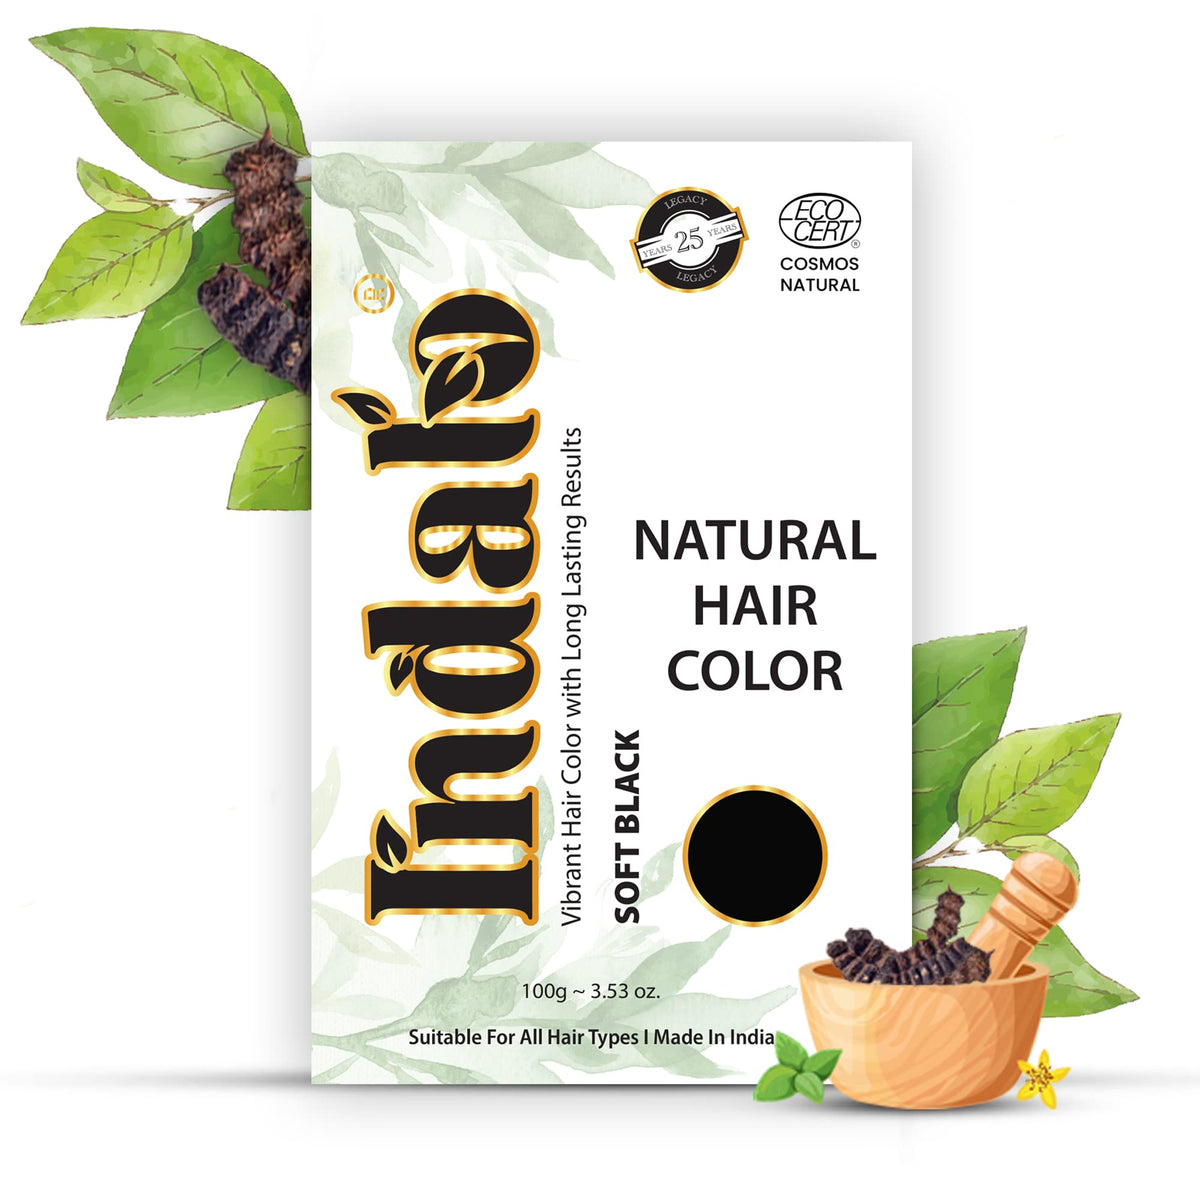 Indalo Natural Hair Color Soft Black | No Ammonia, No Paraben, No PPD, Soft Black Hair Color | Suitable for Men & Women (100g)